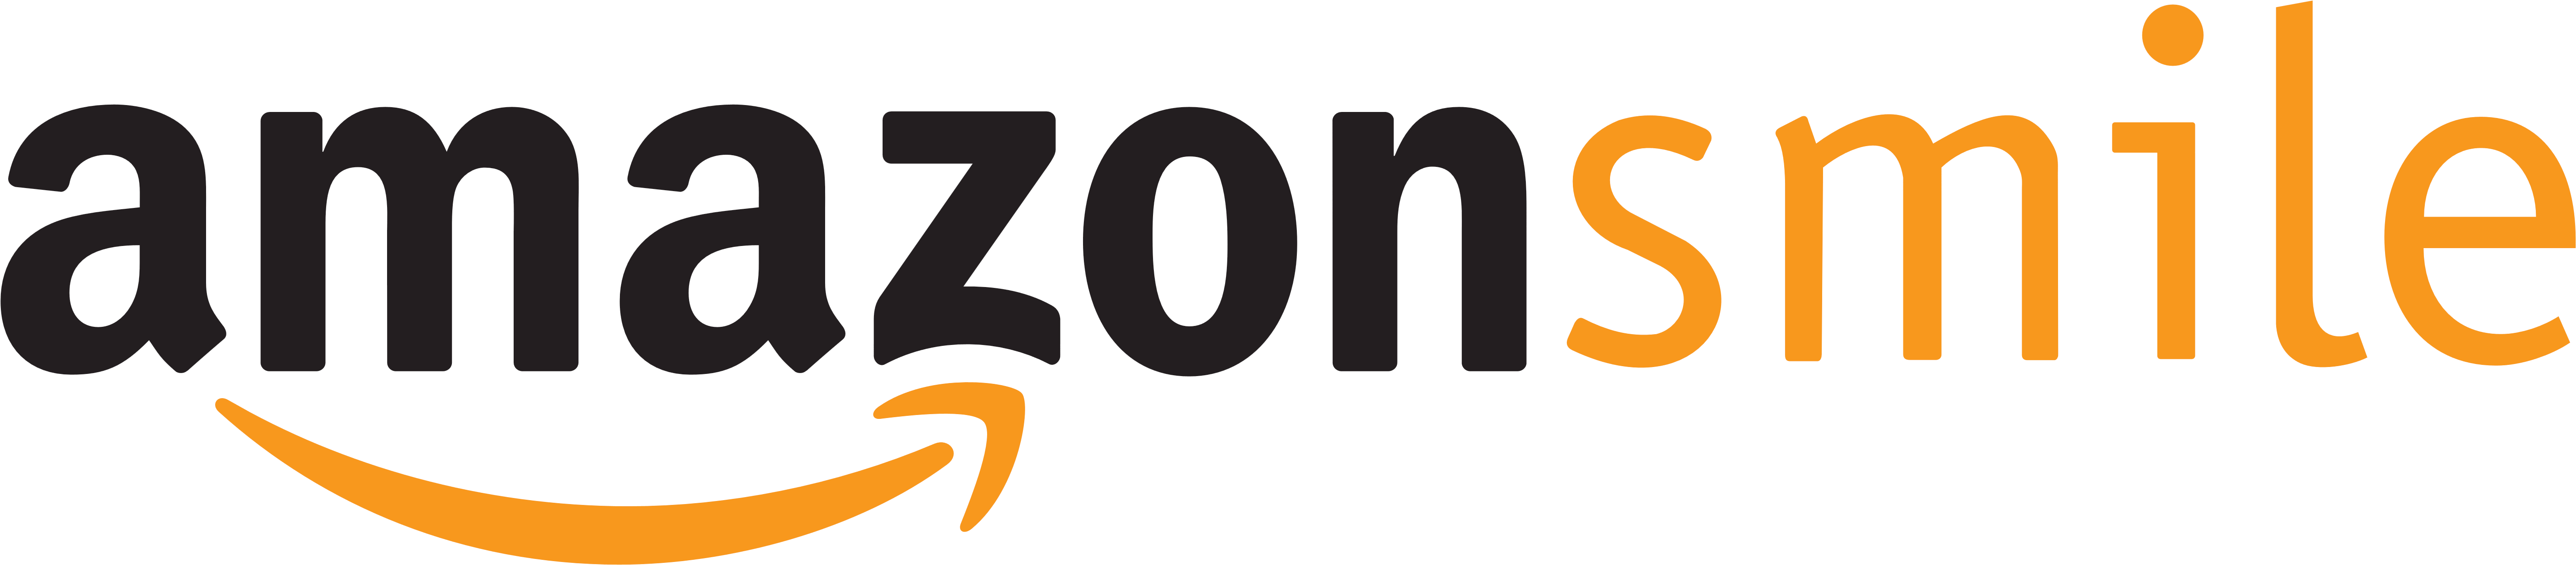 Amazon Smile - Smile Amazon (6188x1504)